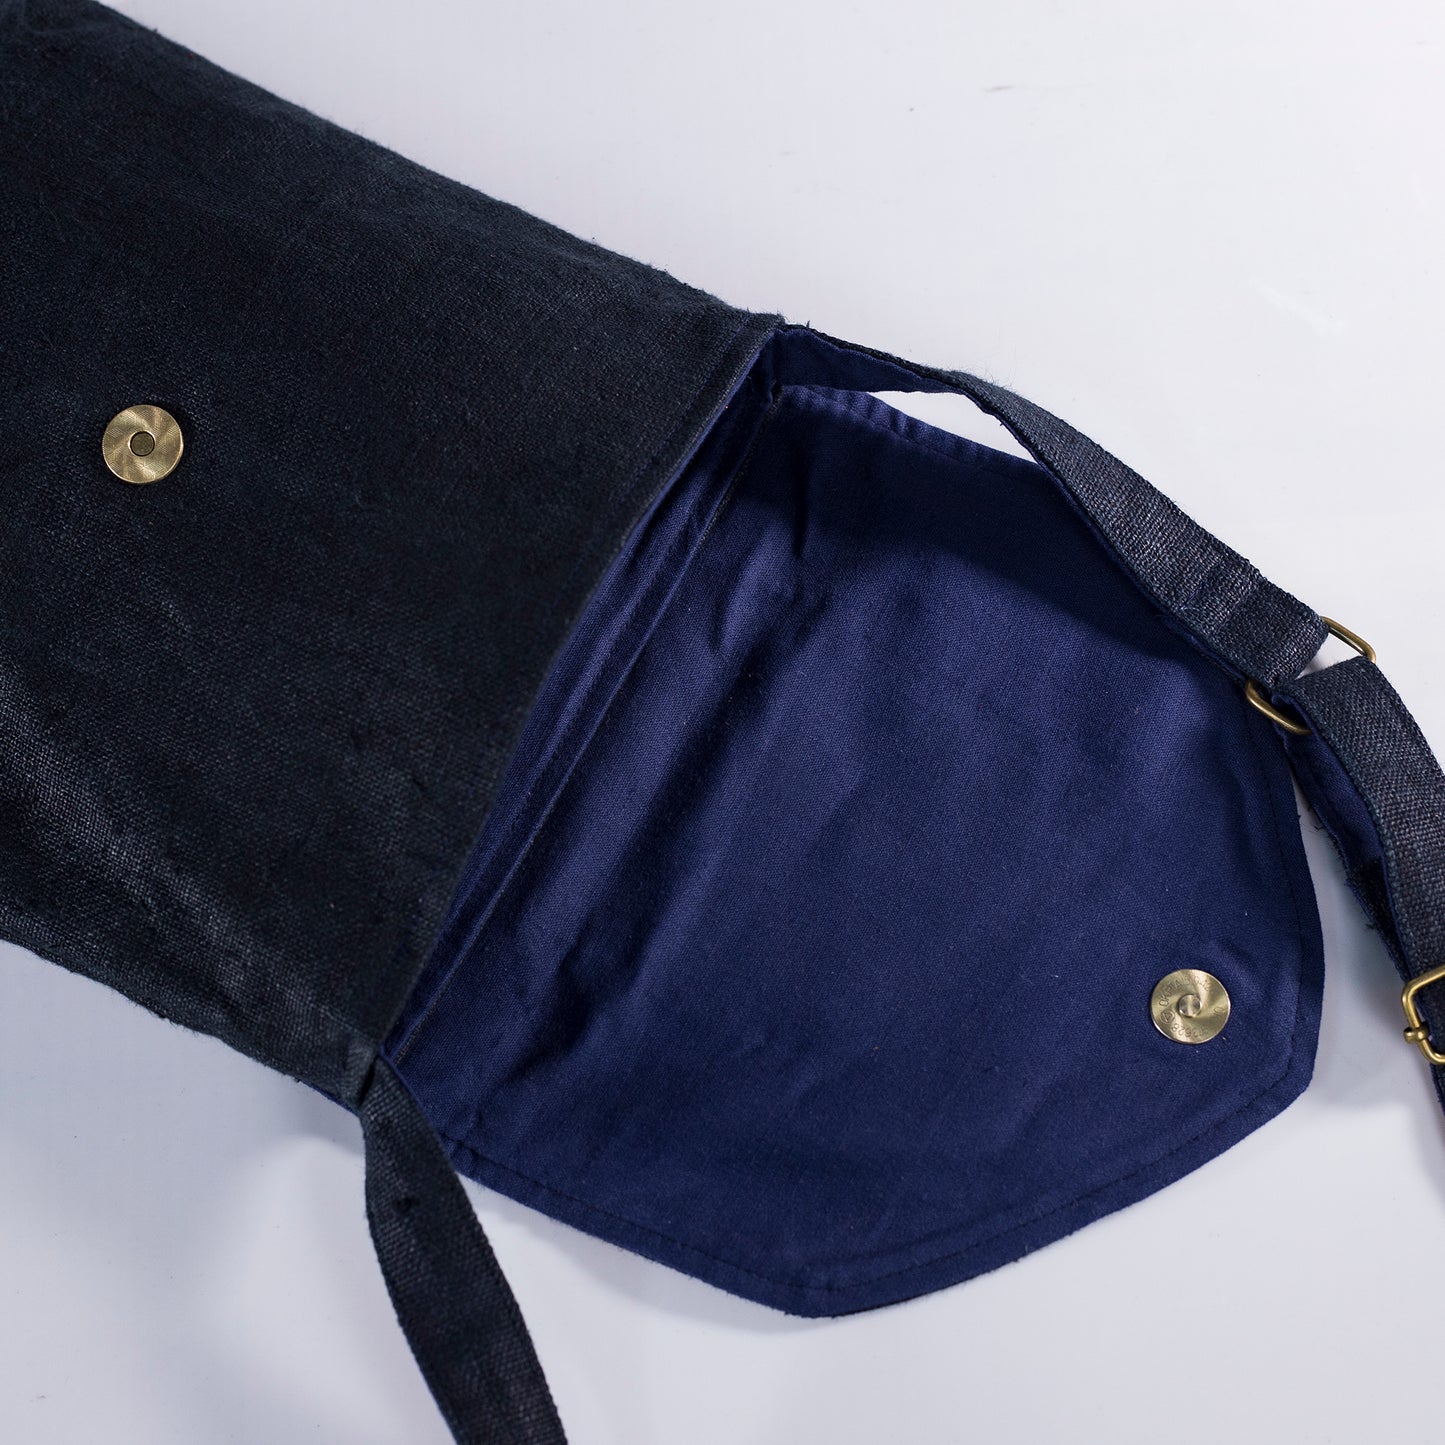 Purity Collection: Cross-body-väska, naturlig hampa i SVART med vintage-lapp